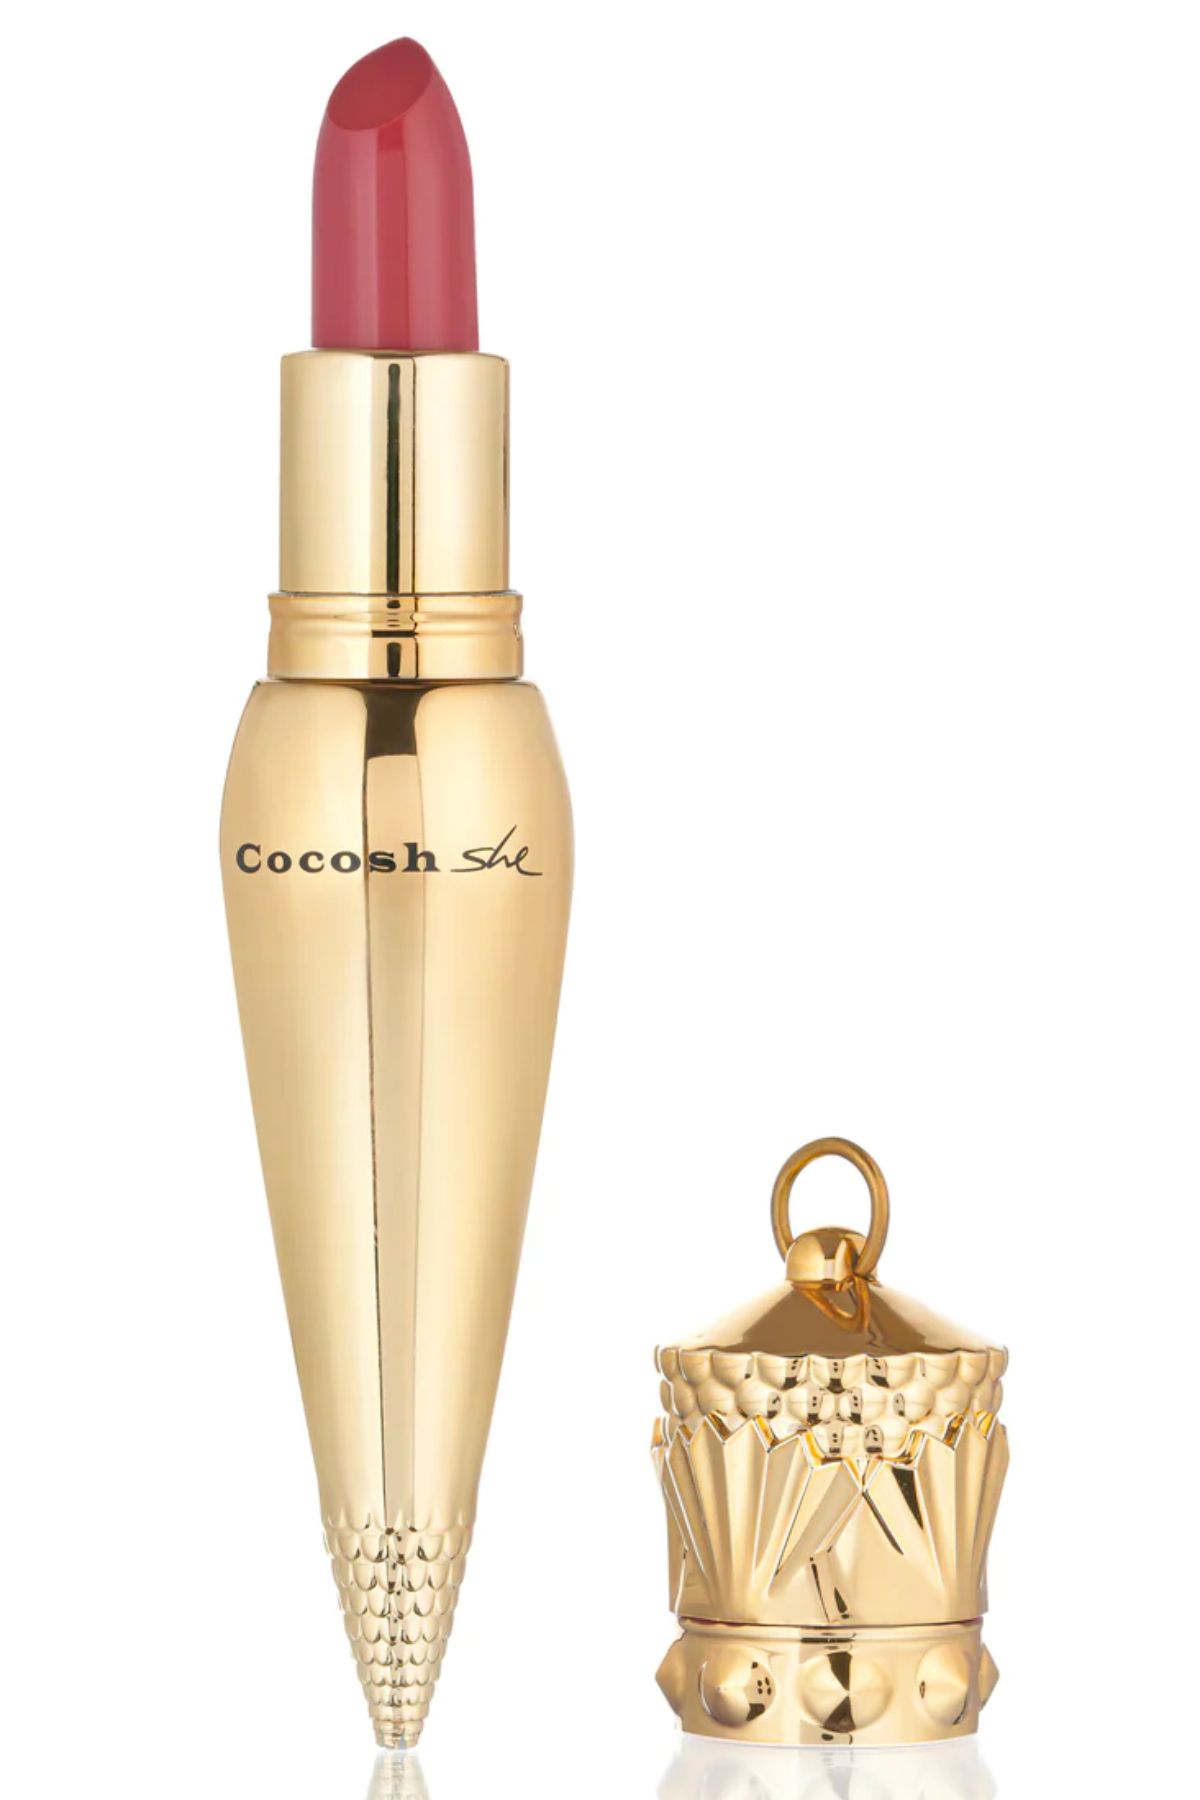 Cocosh She Everyday Lipstick Ruj 05 Garnet, Nemlendirici Etki, Yoğun Pigmentasyon, Kadifemsi Dudaklar